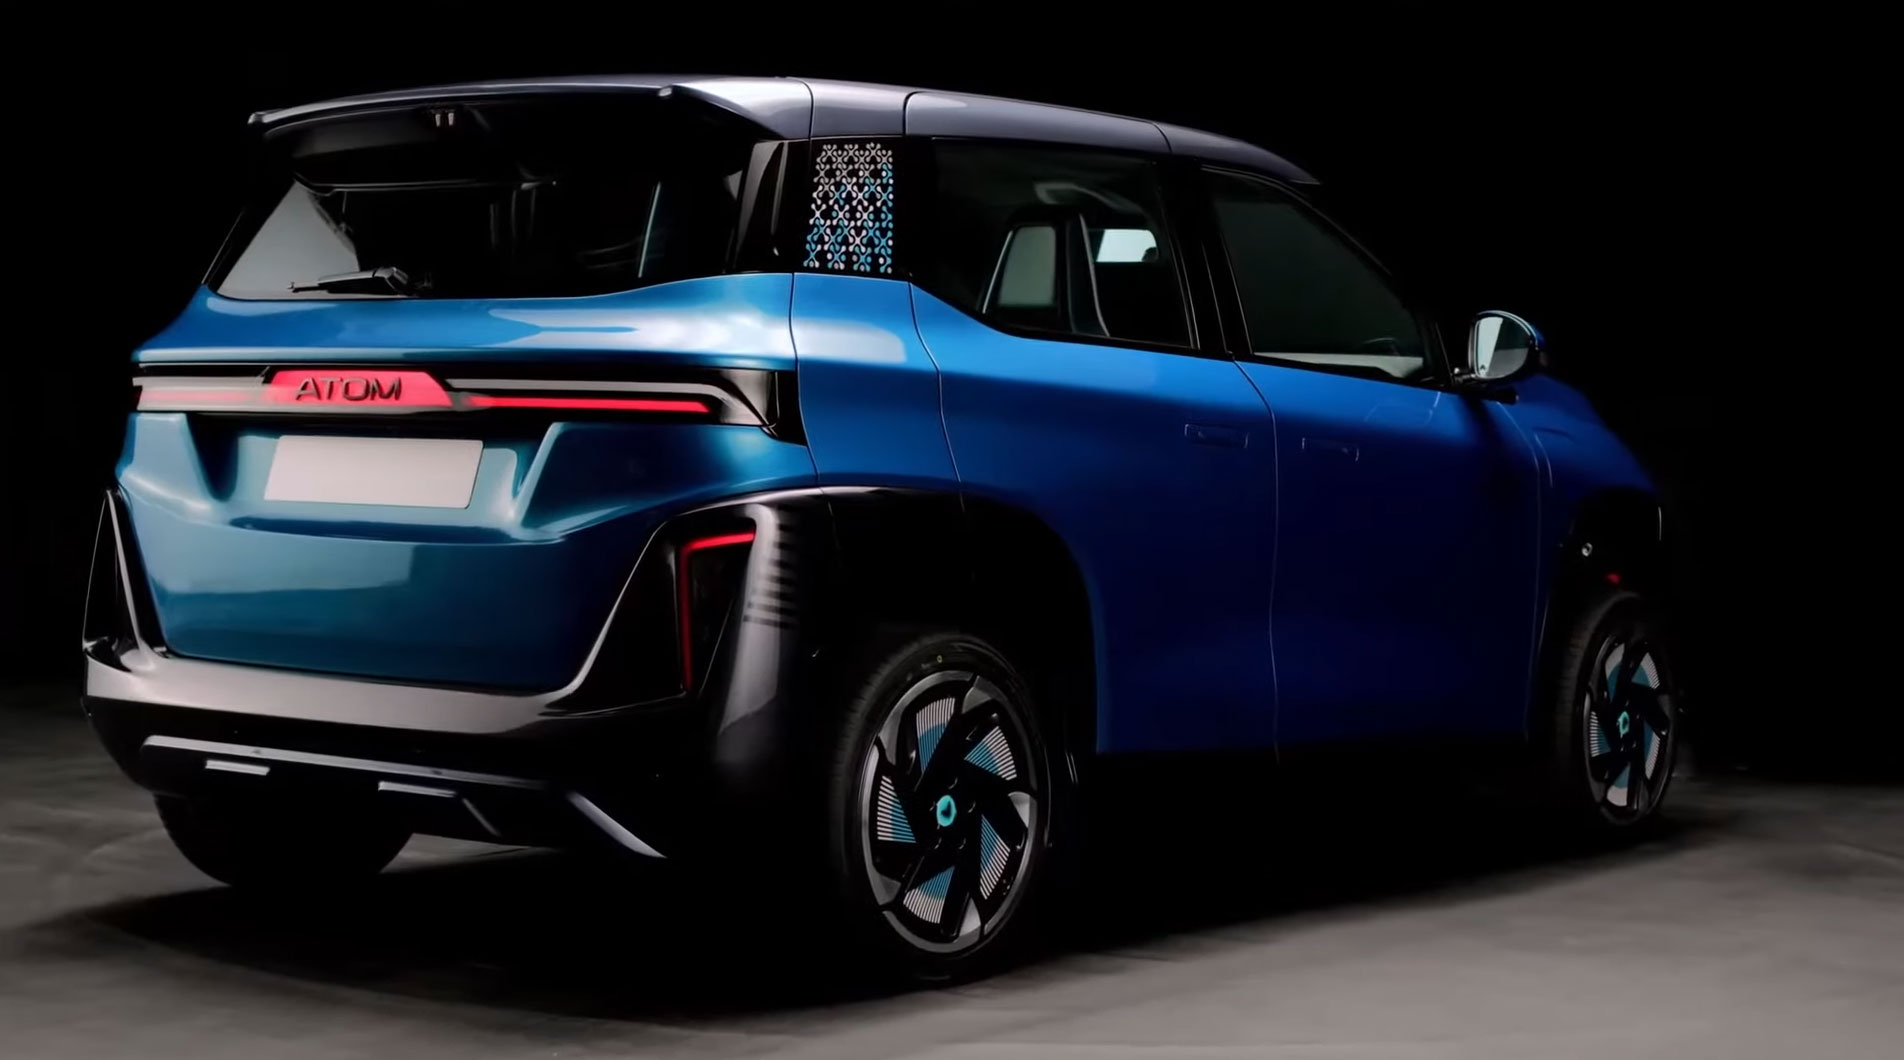 🚗 Russian Electric Car "Atom" Futuristic Design